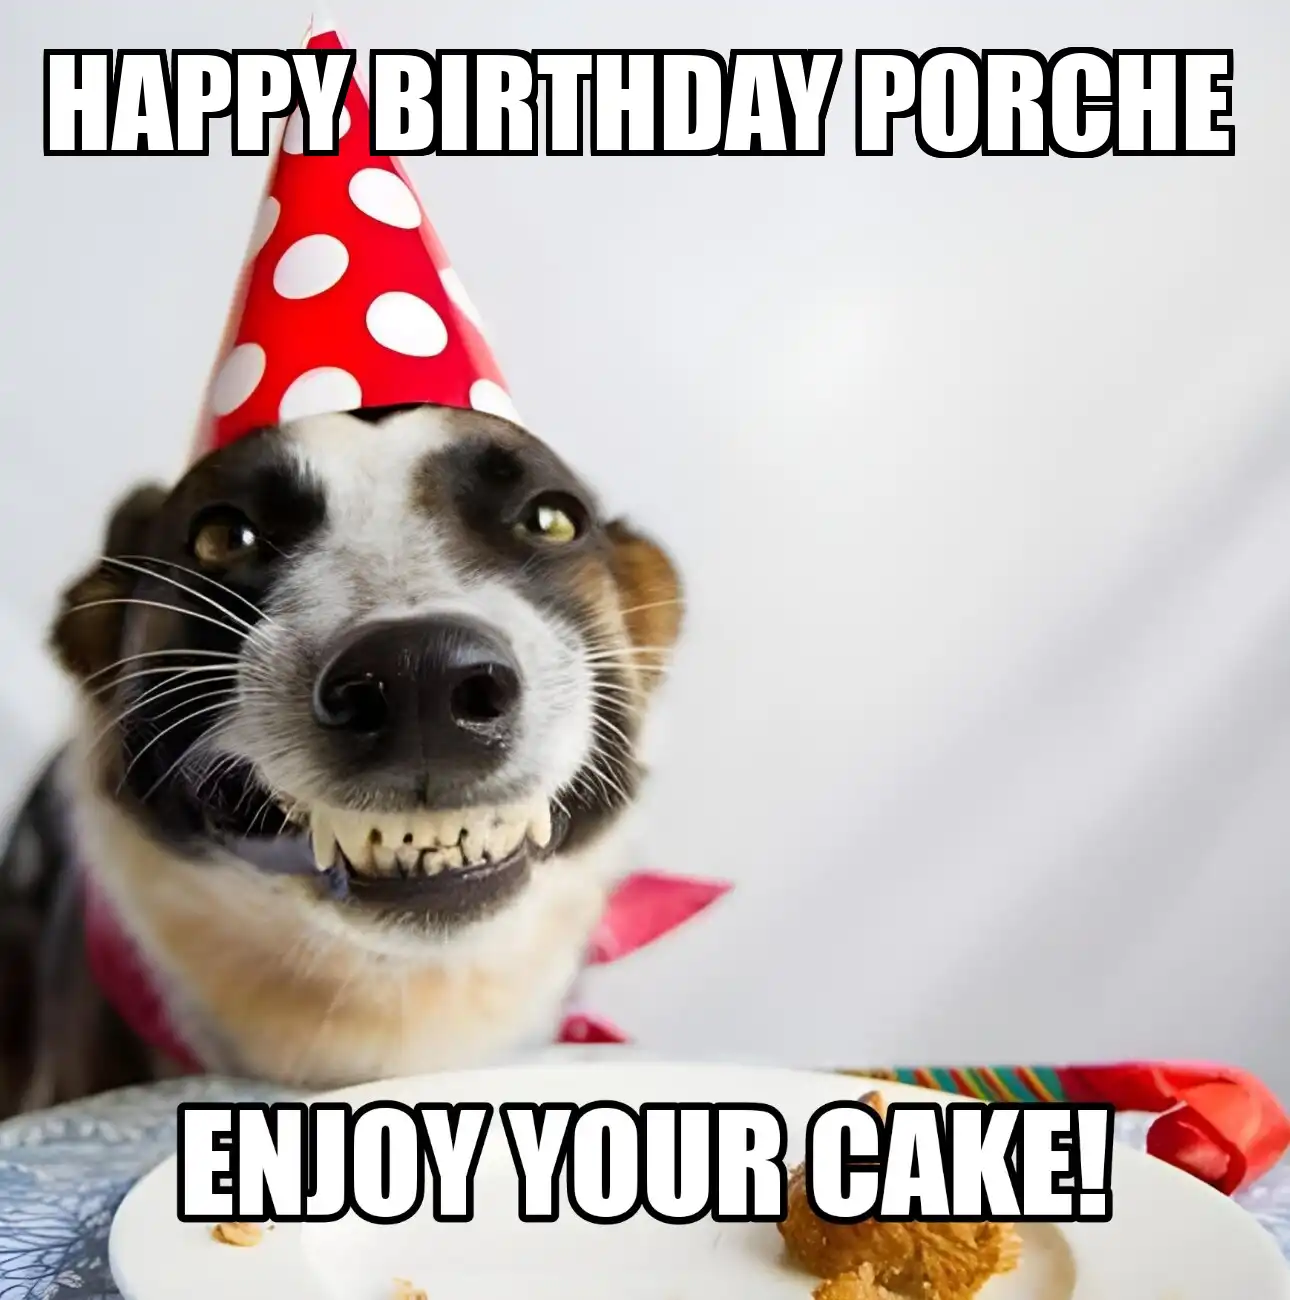 Happy Birthday Porche Enjoy Your Cake Dog Meme